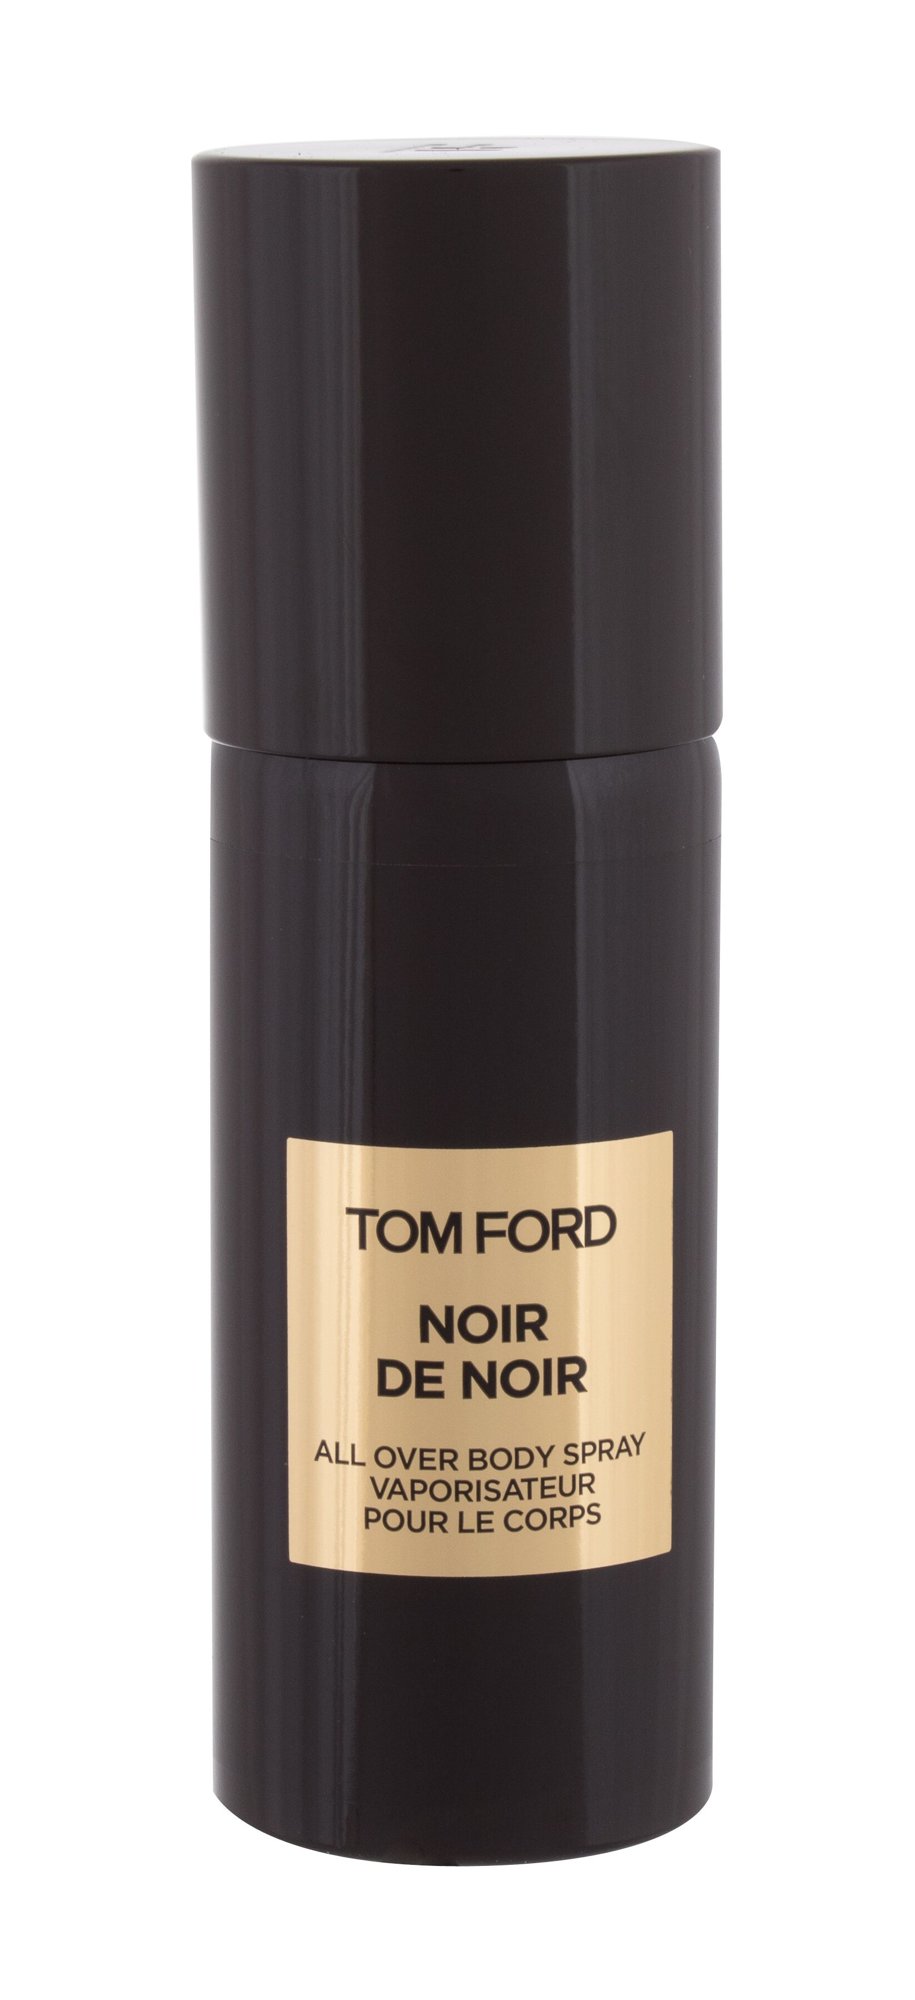 Tom Ford Noir de Noir 150ml NIŠINIAI dezodorantas